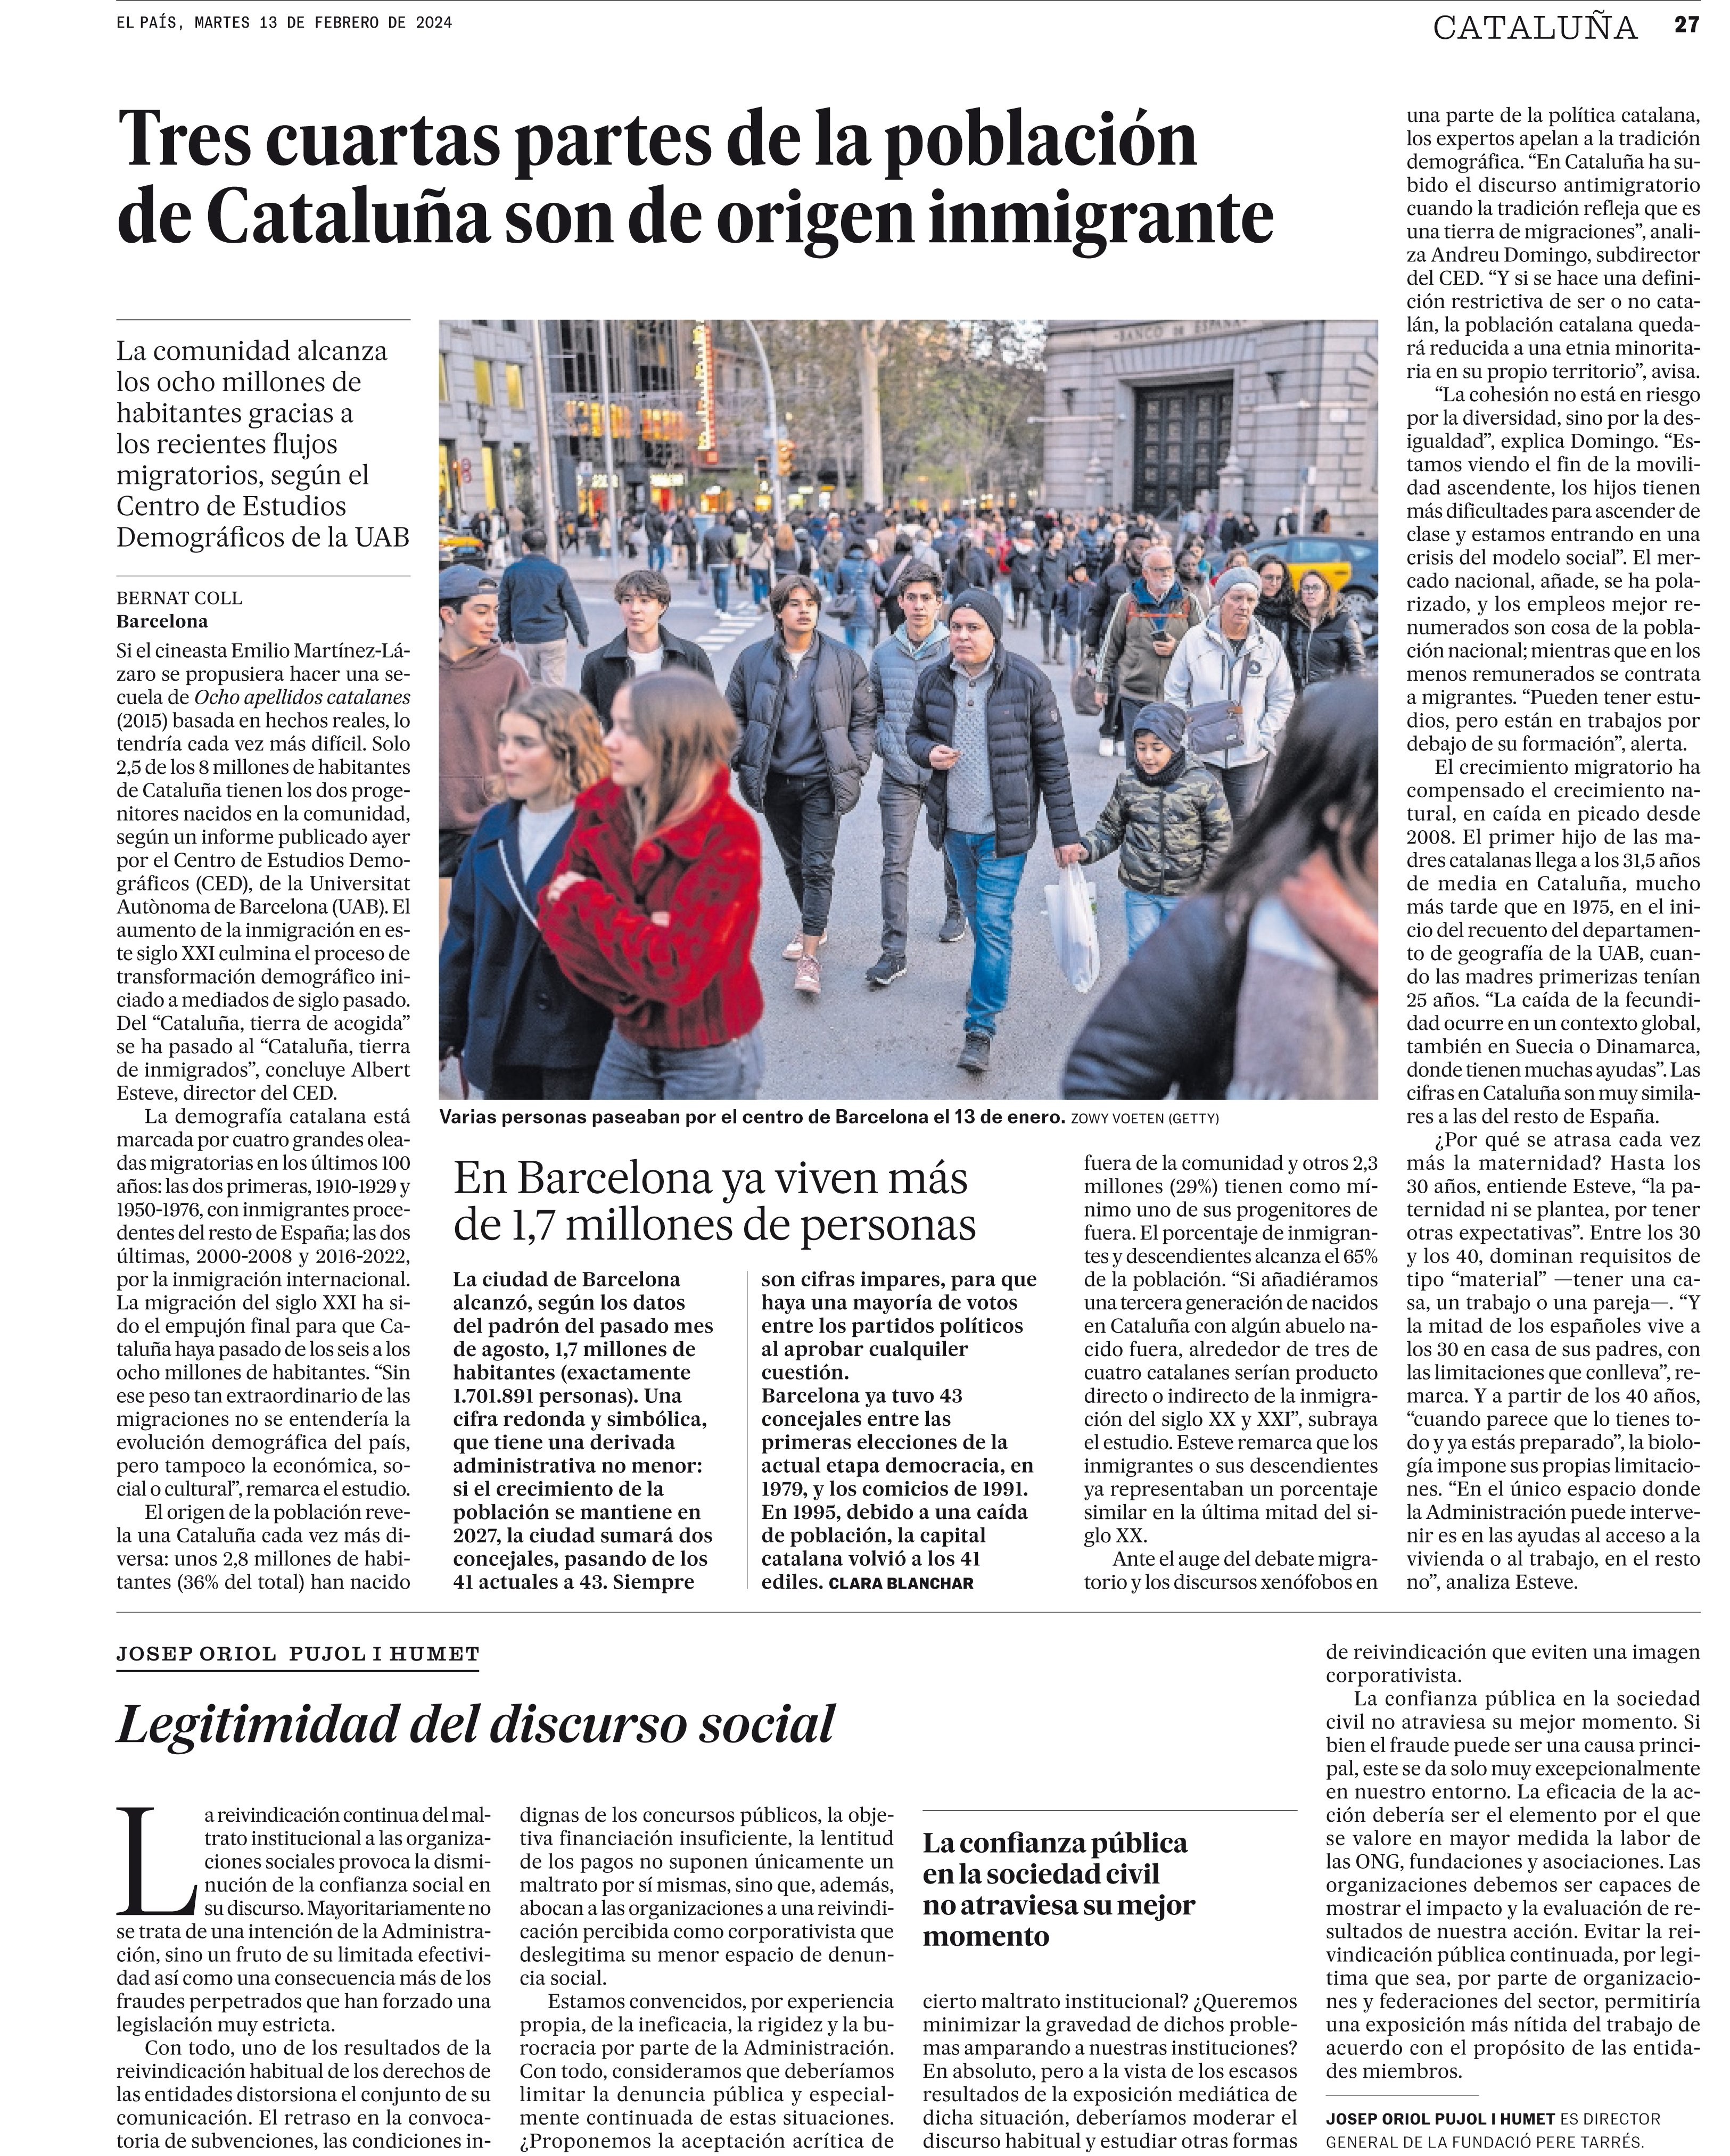 Pàgina del diari El País sobre un informe de demografia de Catalunya